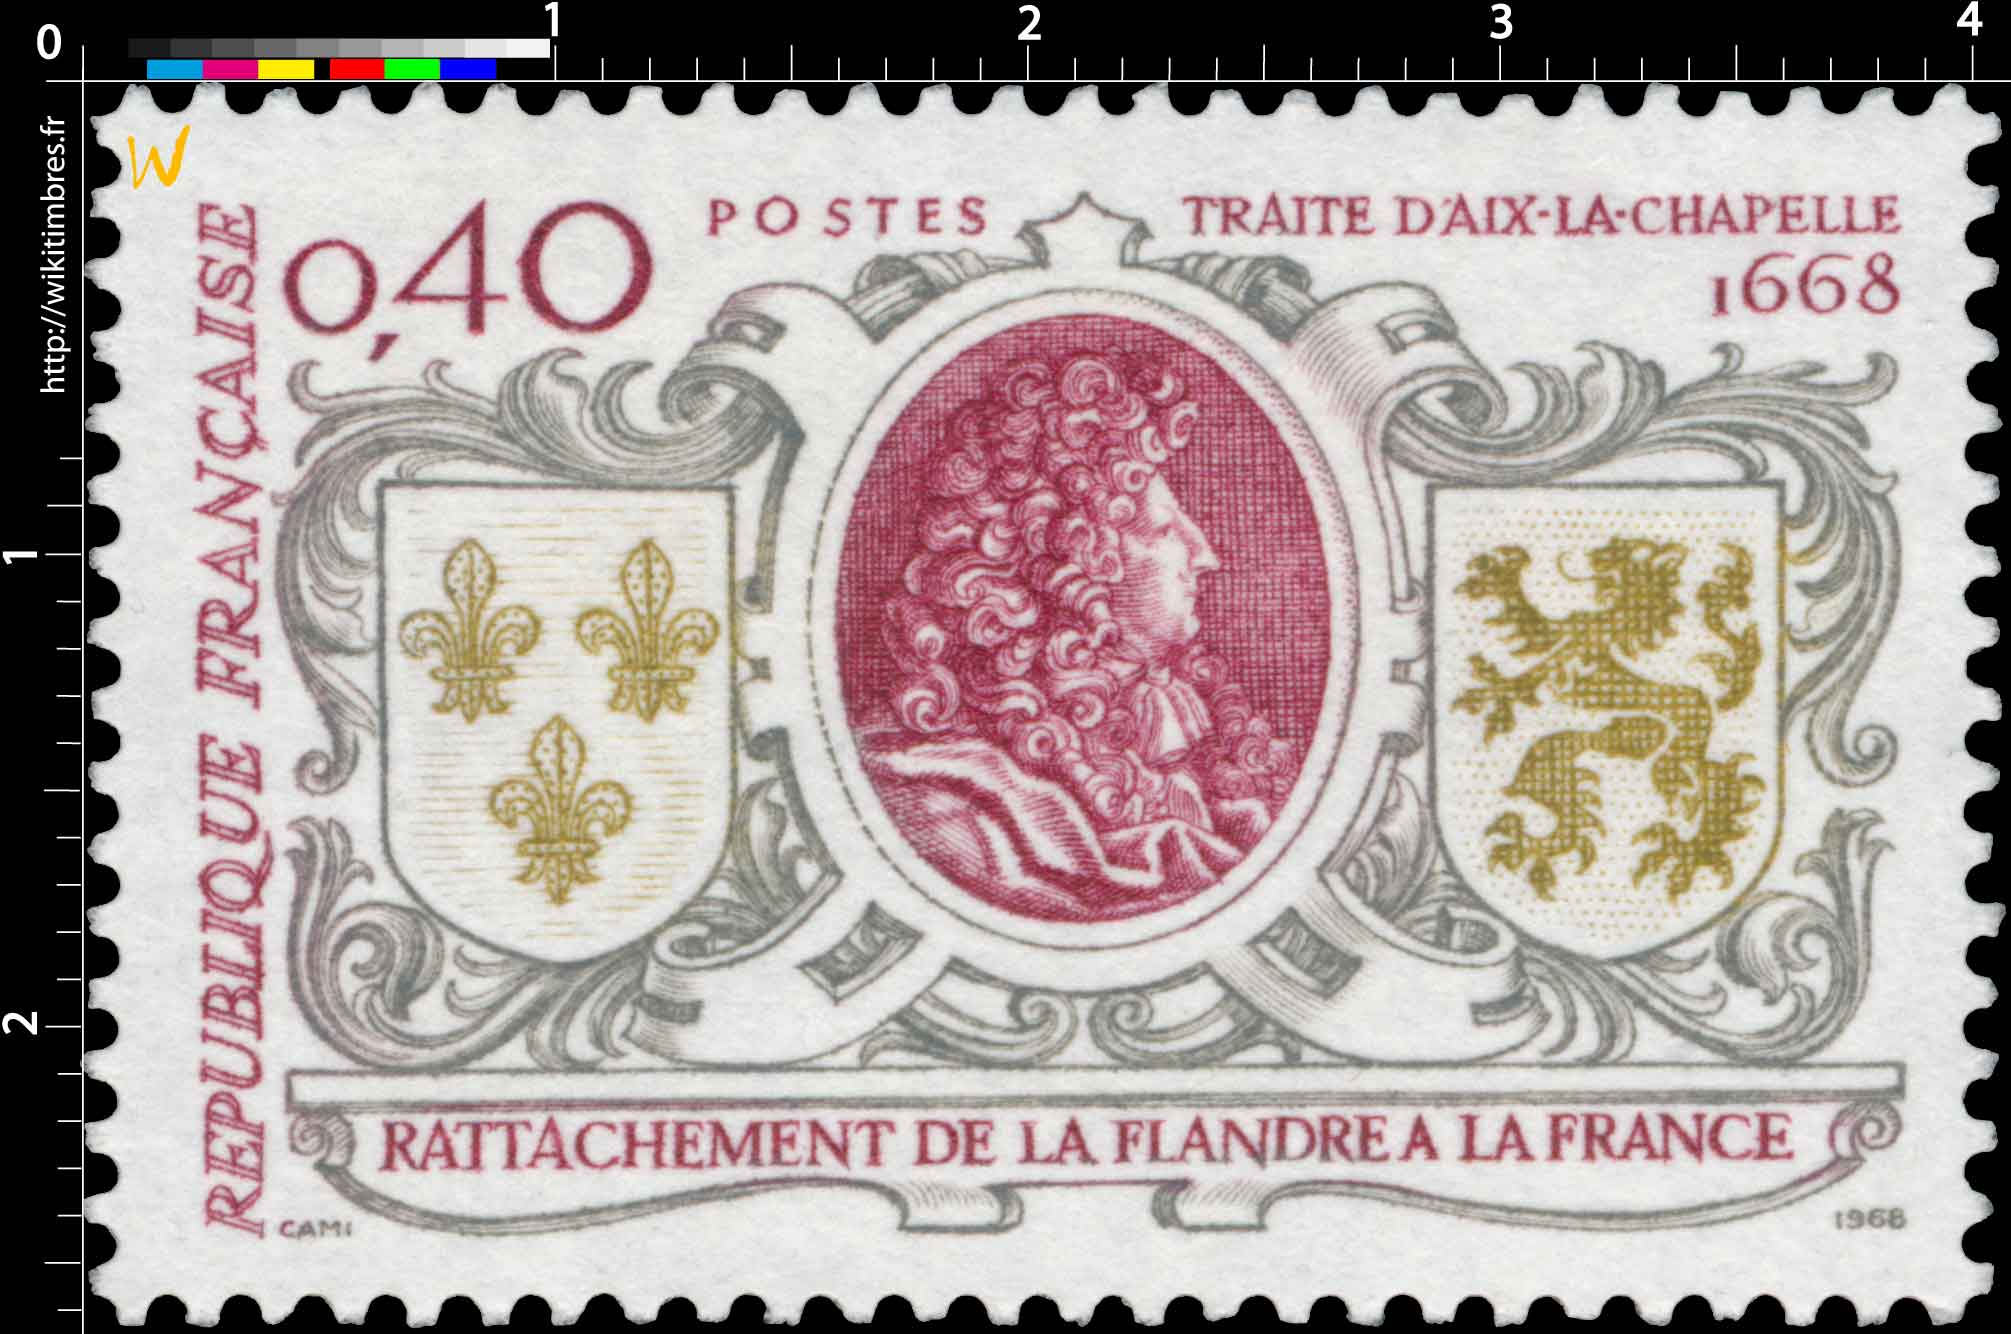 1968 RATTACHEMENT DE LA FLANDRE A LA FRANCE TRAITE D'AIX LA CHAPELLE 1668